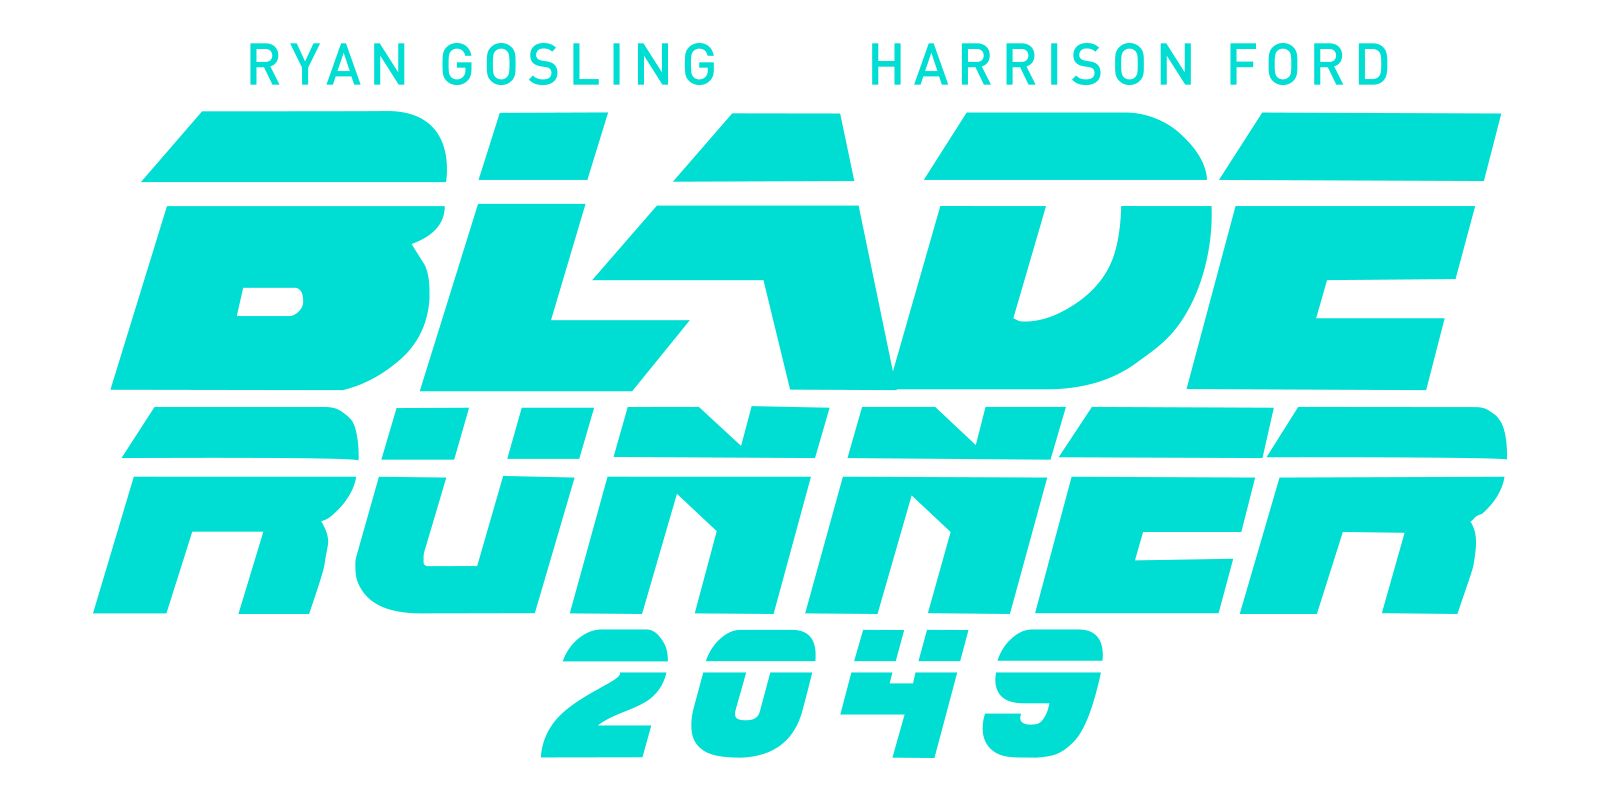 blade runner 2049 full movie